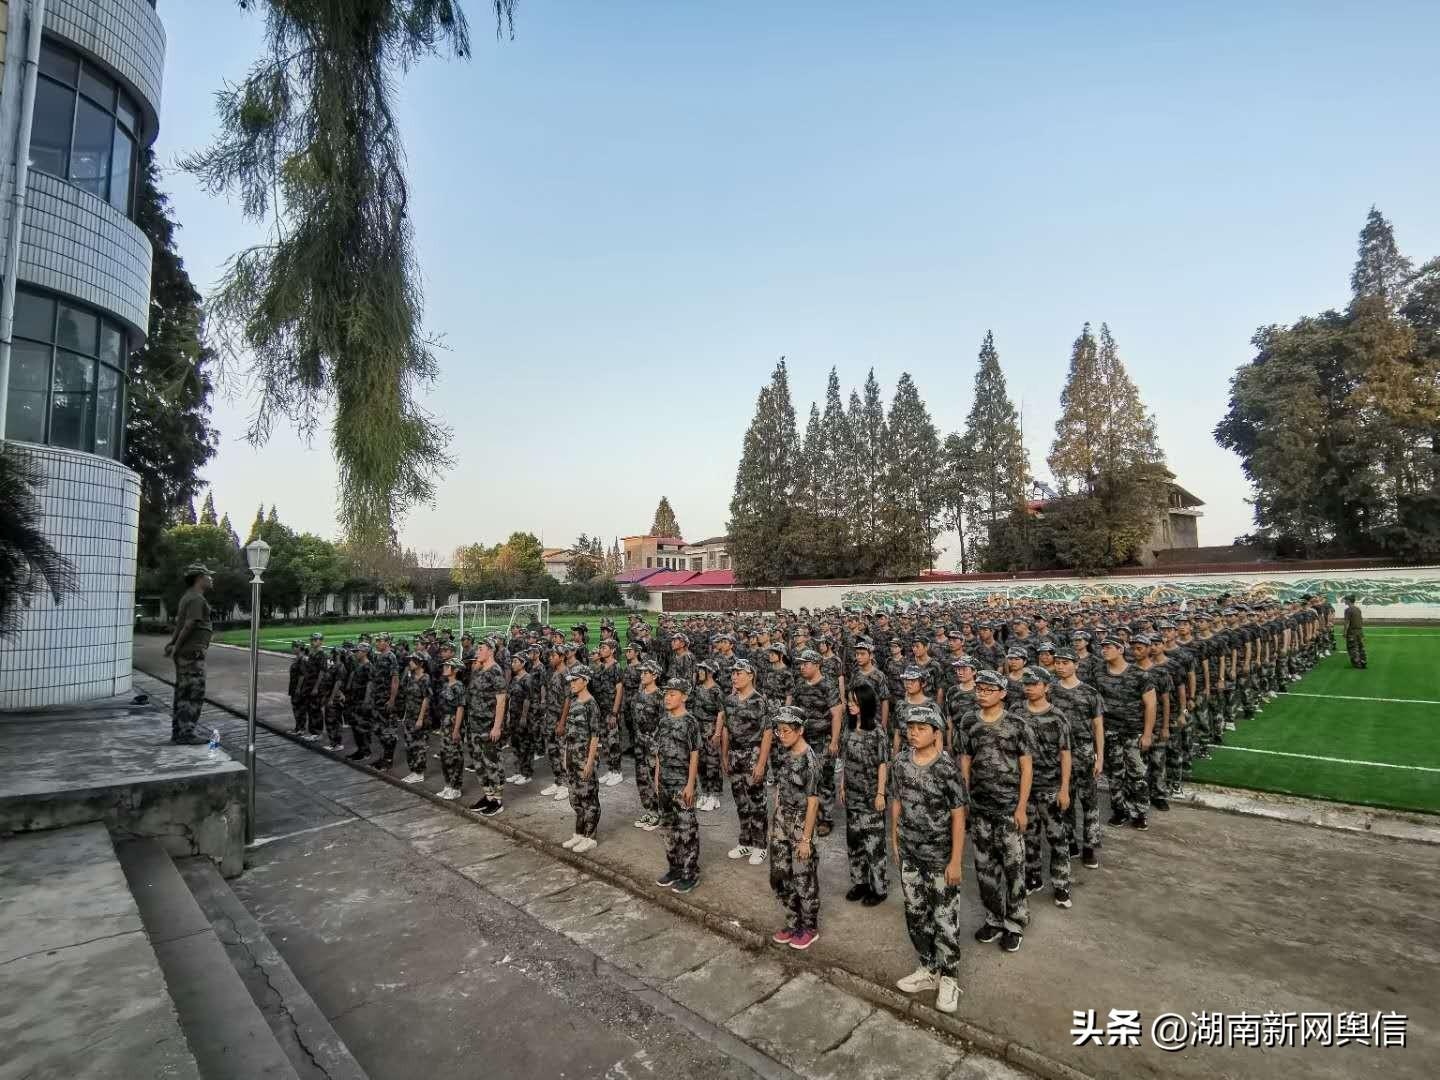 安乡县第三中学:培养军事素质磨炼顽强意志